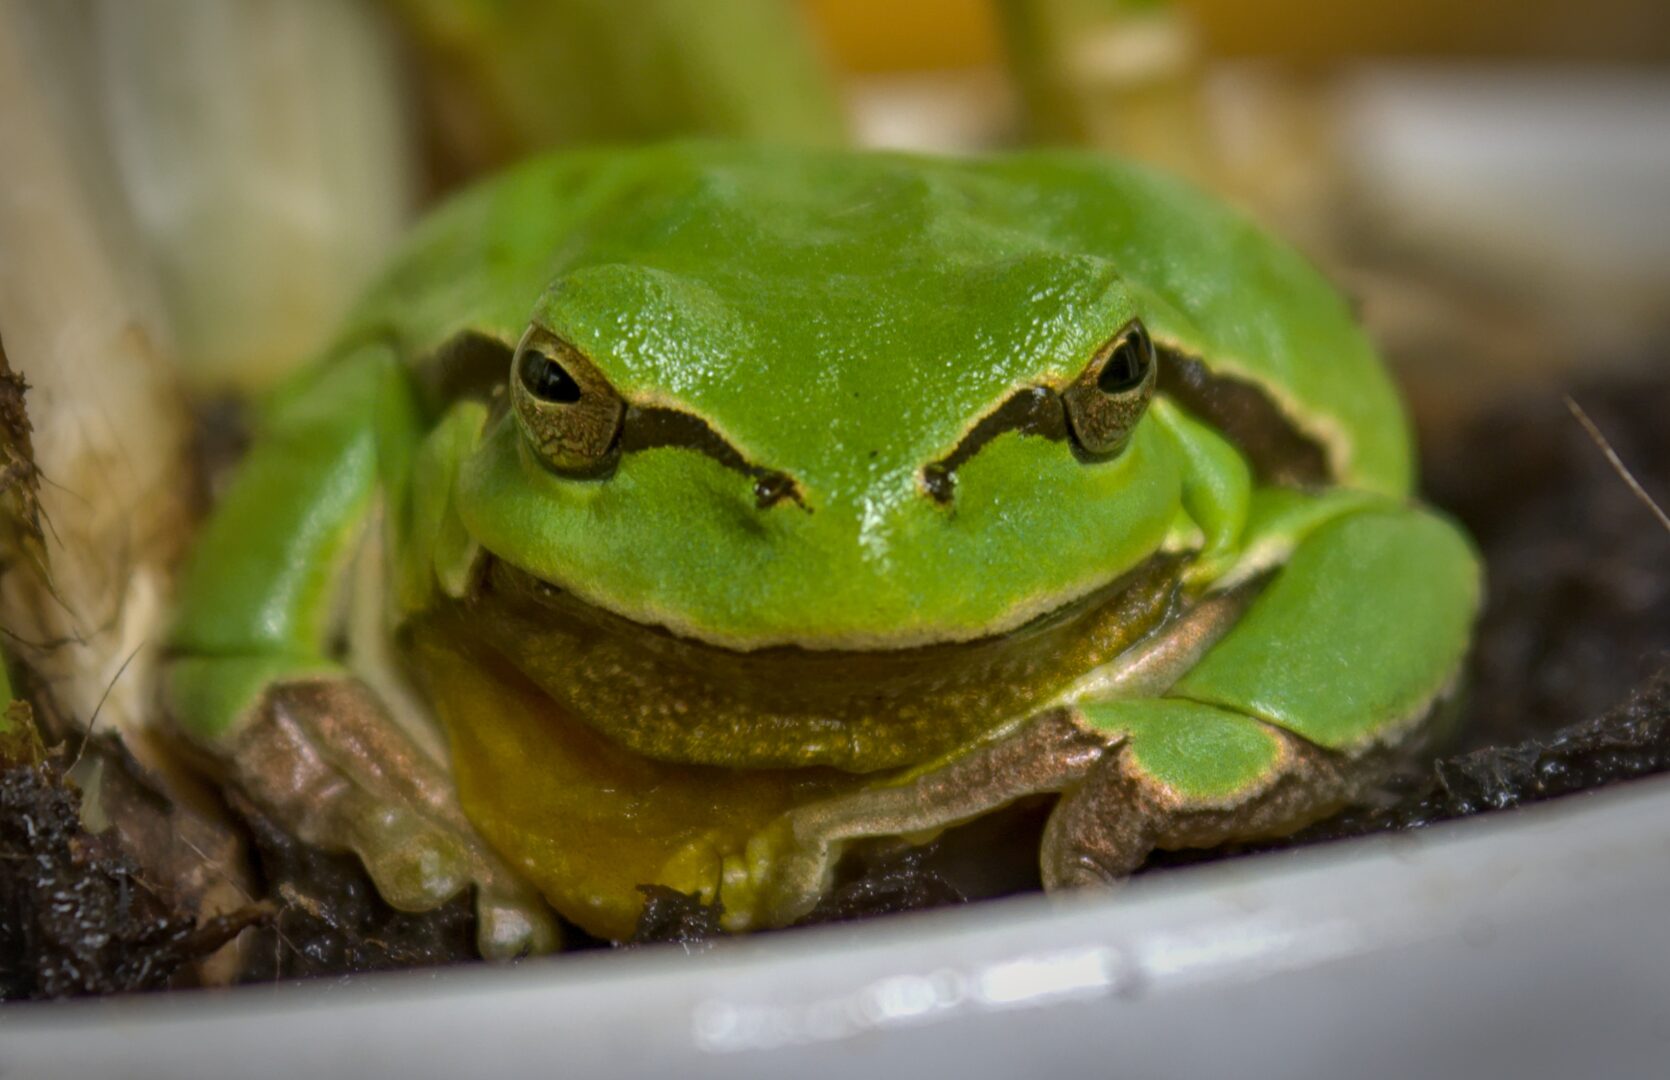 green frog looking at the camera